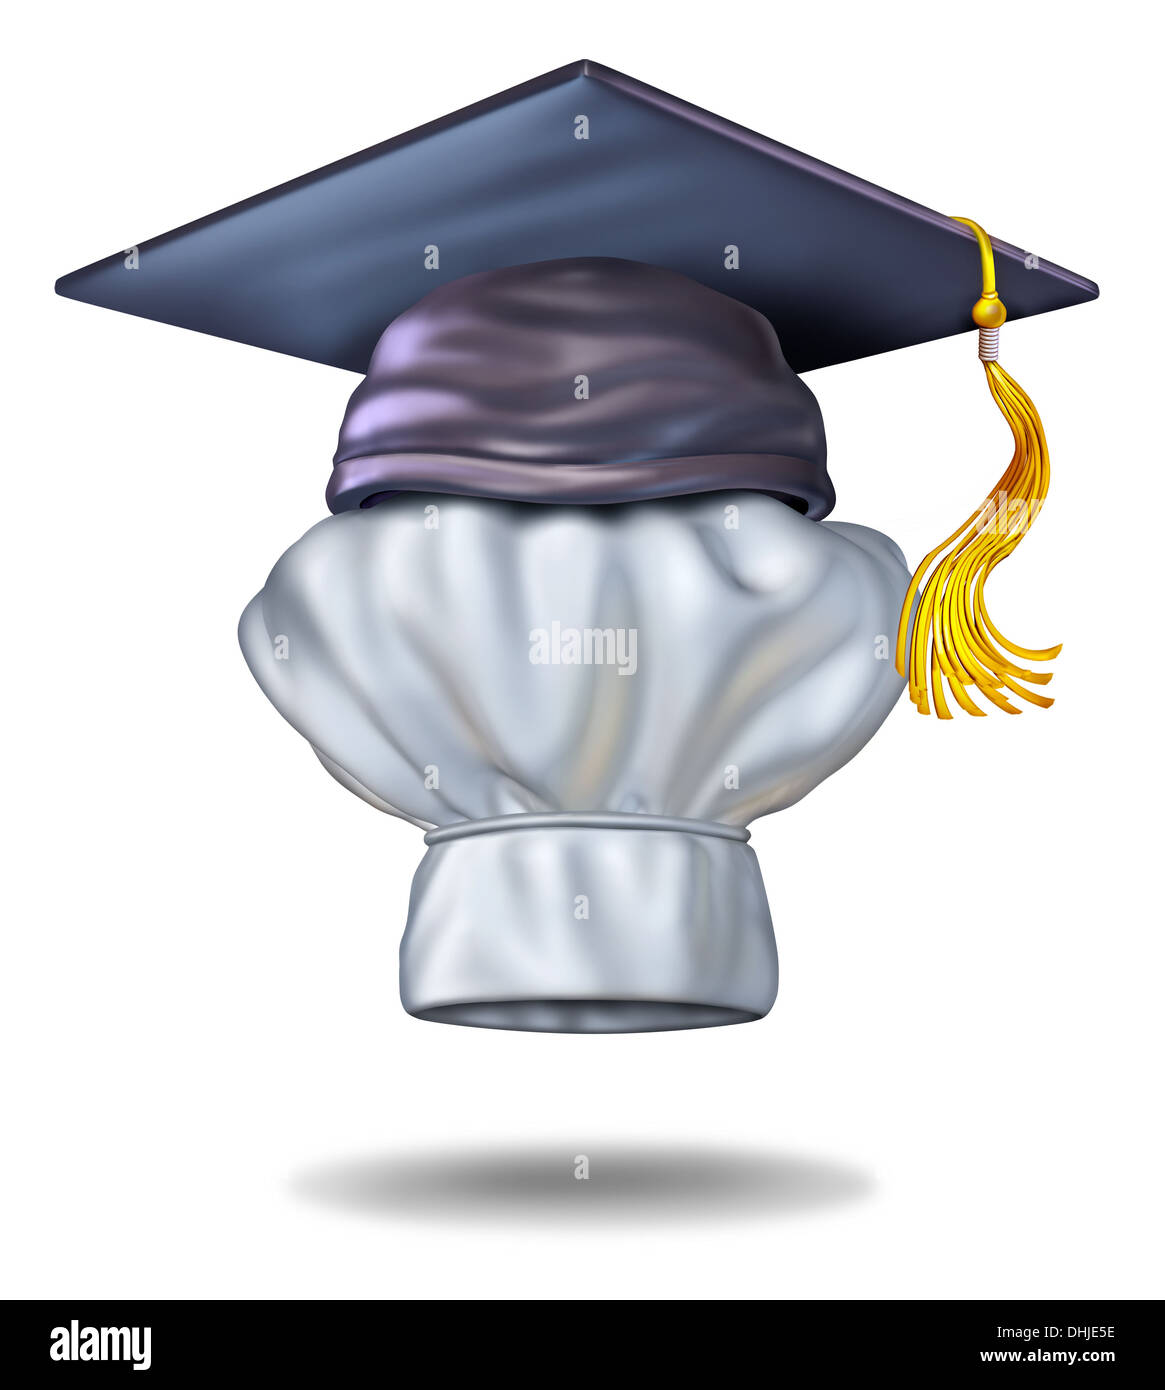 Alimentare il concetto di istruzione e la scuola di cucina simbolo con un cappuccio di graduazione o malta scheda sul cappello da cuoco come icona di formazione culinaria e imparare a cucinare pasti gourmet per ristoranti o home la cucina. Foto Stock